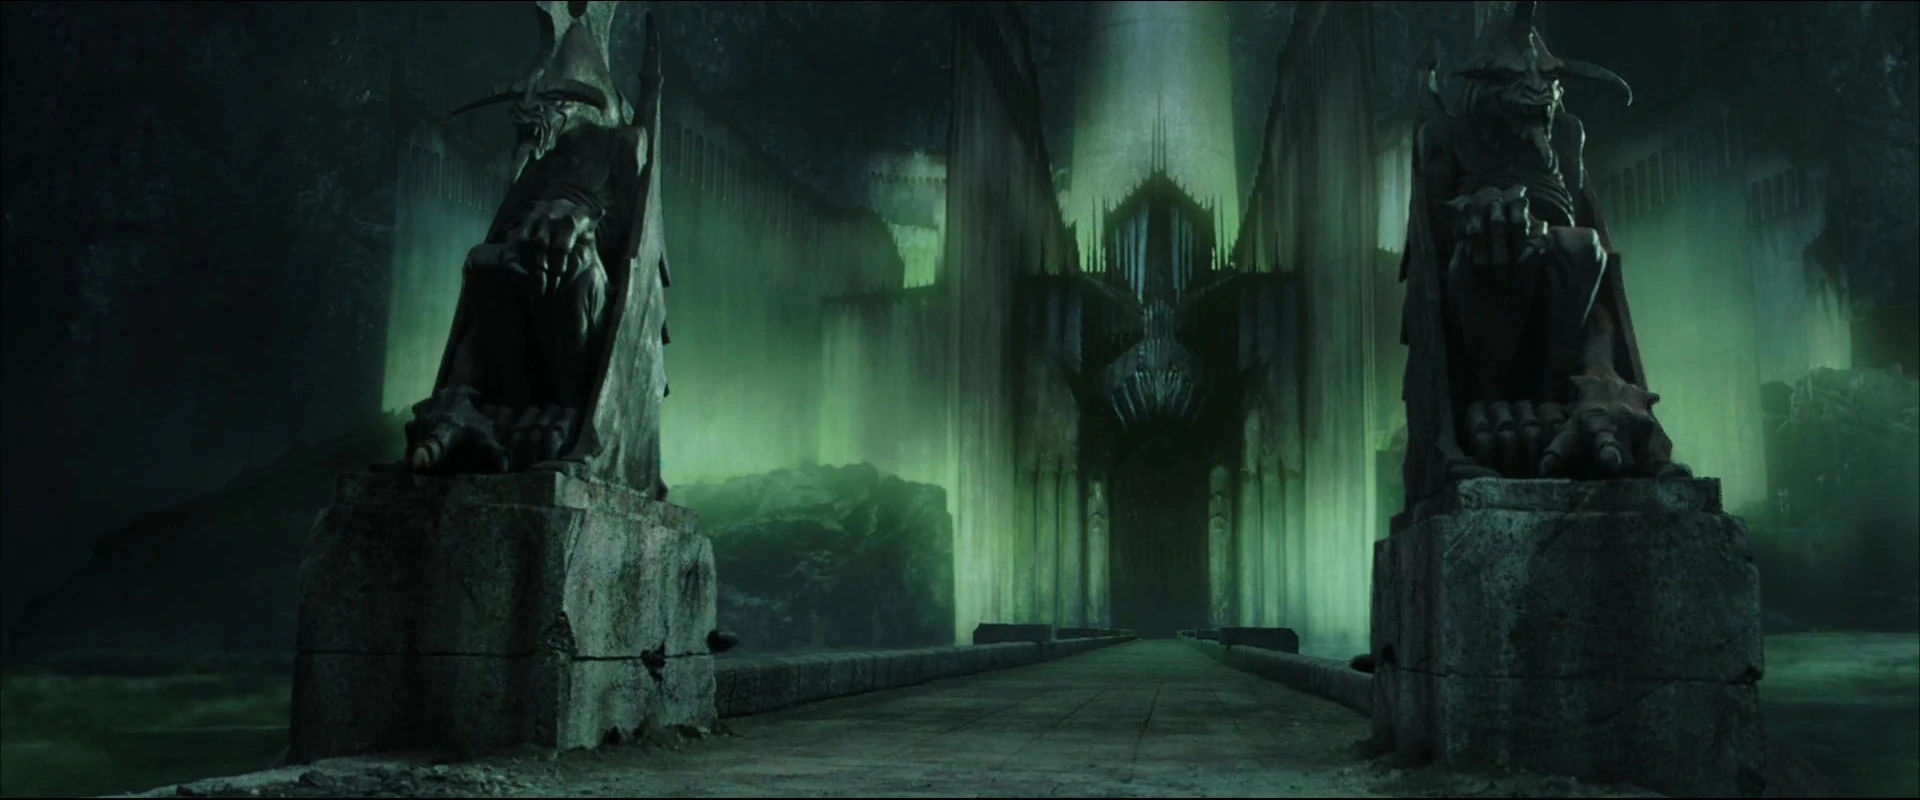 Minas Morgul, Wiki